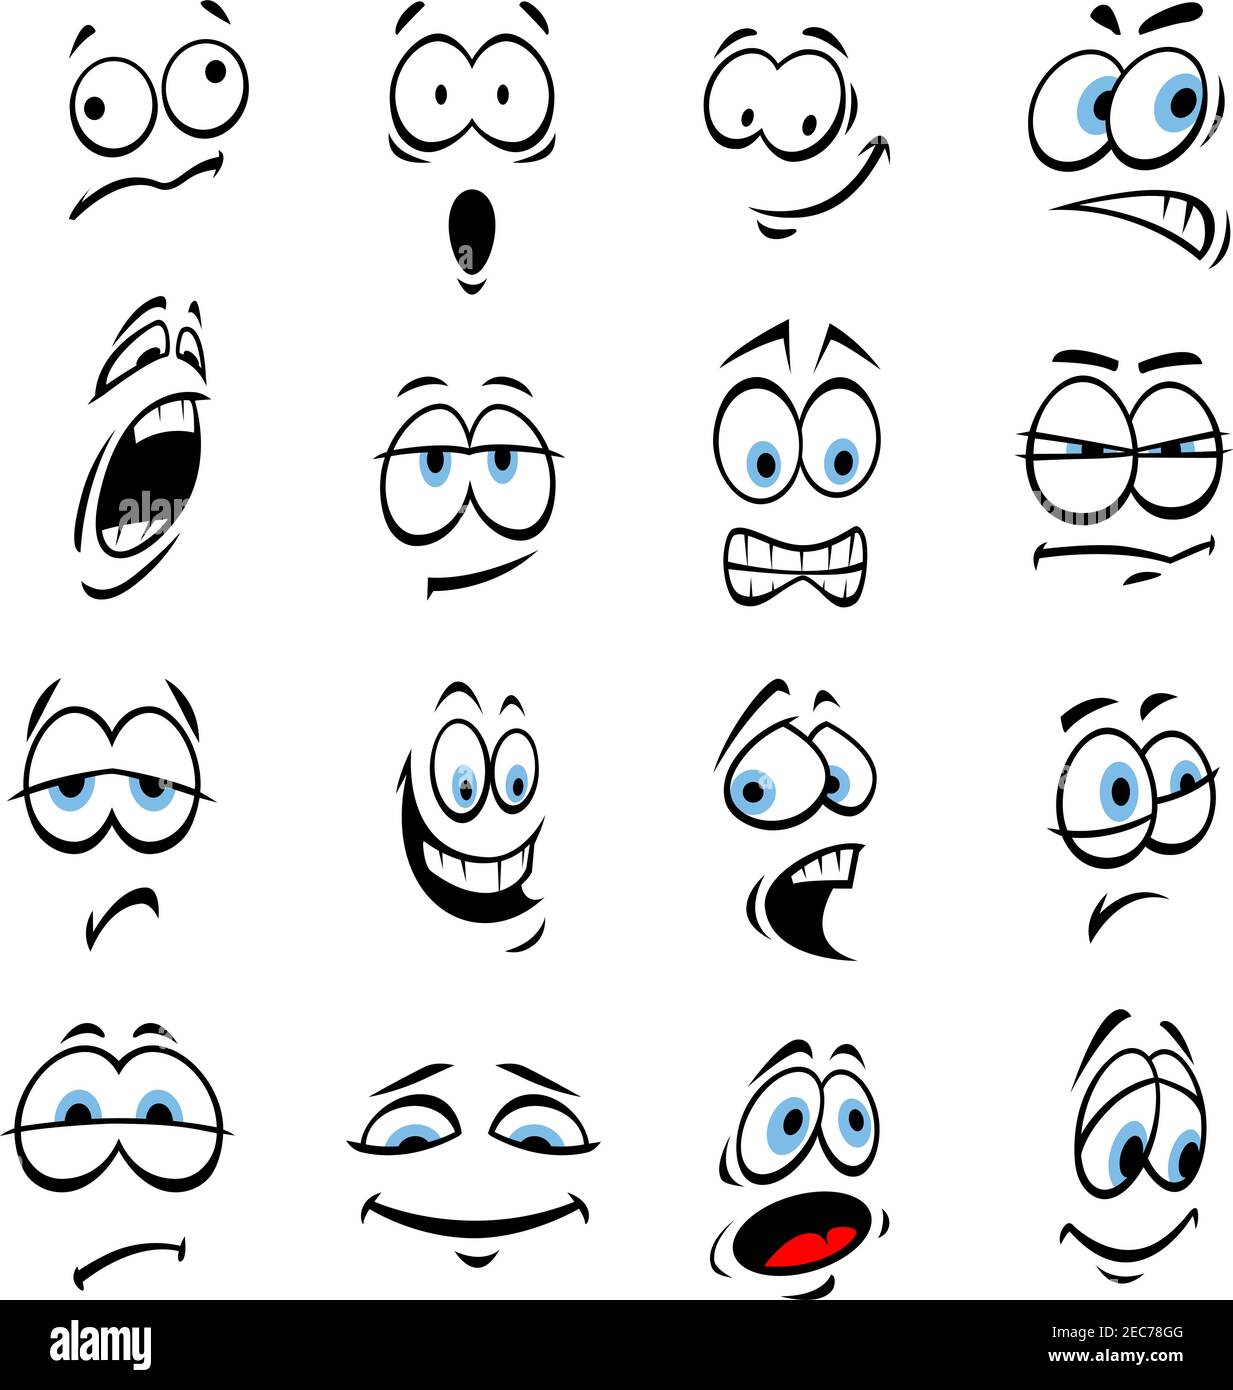 Occhi cartone animato con espressioni ed emozioni del volto. Icone simpatico sorrisi per emoticon. Elementi emoji vettoriali sorridenti, felici, tristi, arrabbiati, pazzi, stupidi, shock Illustrazione Vettoriale